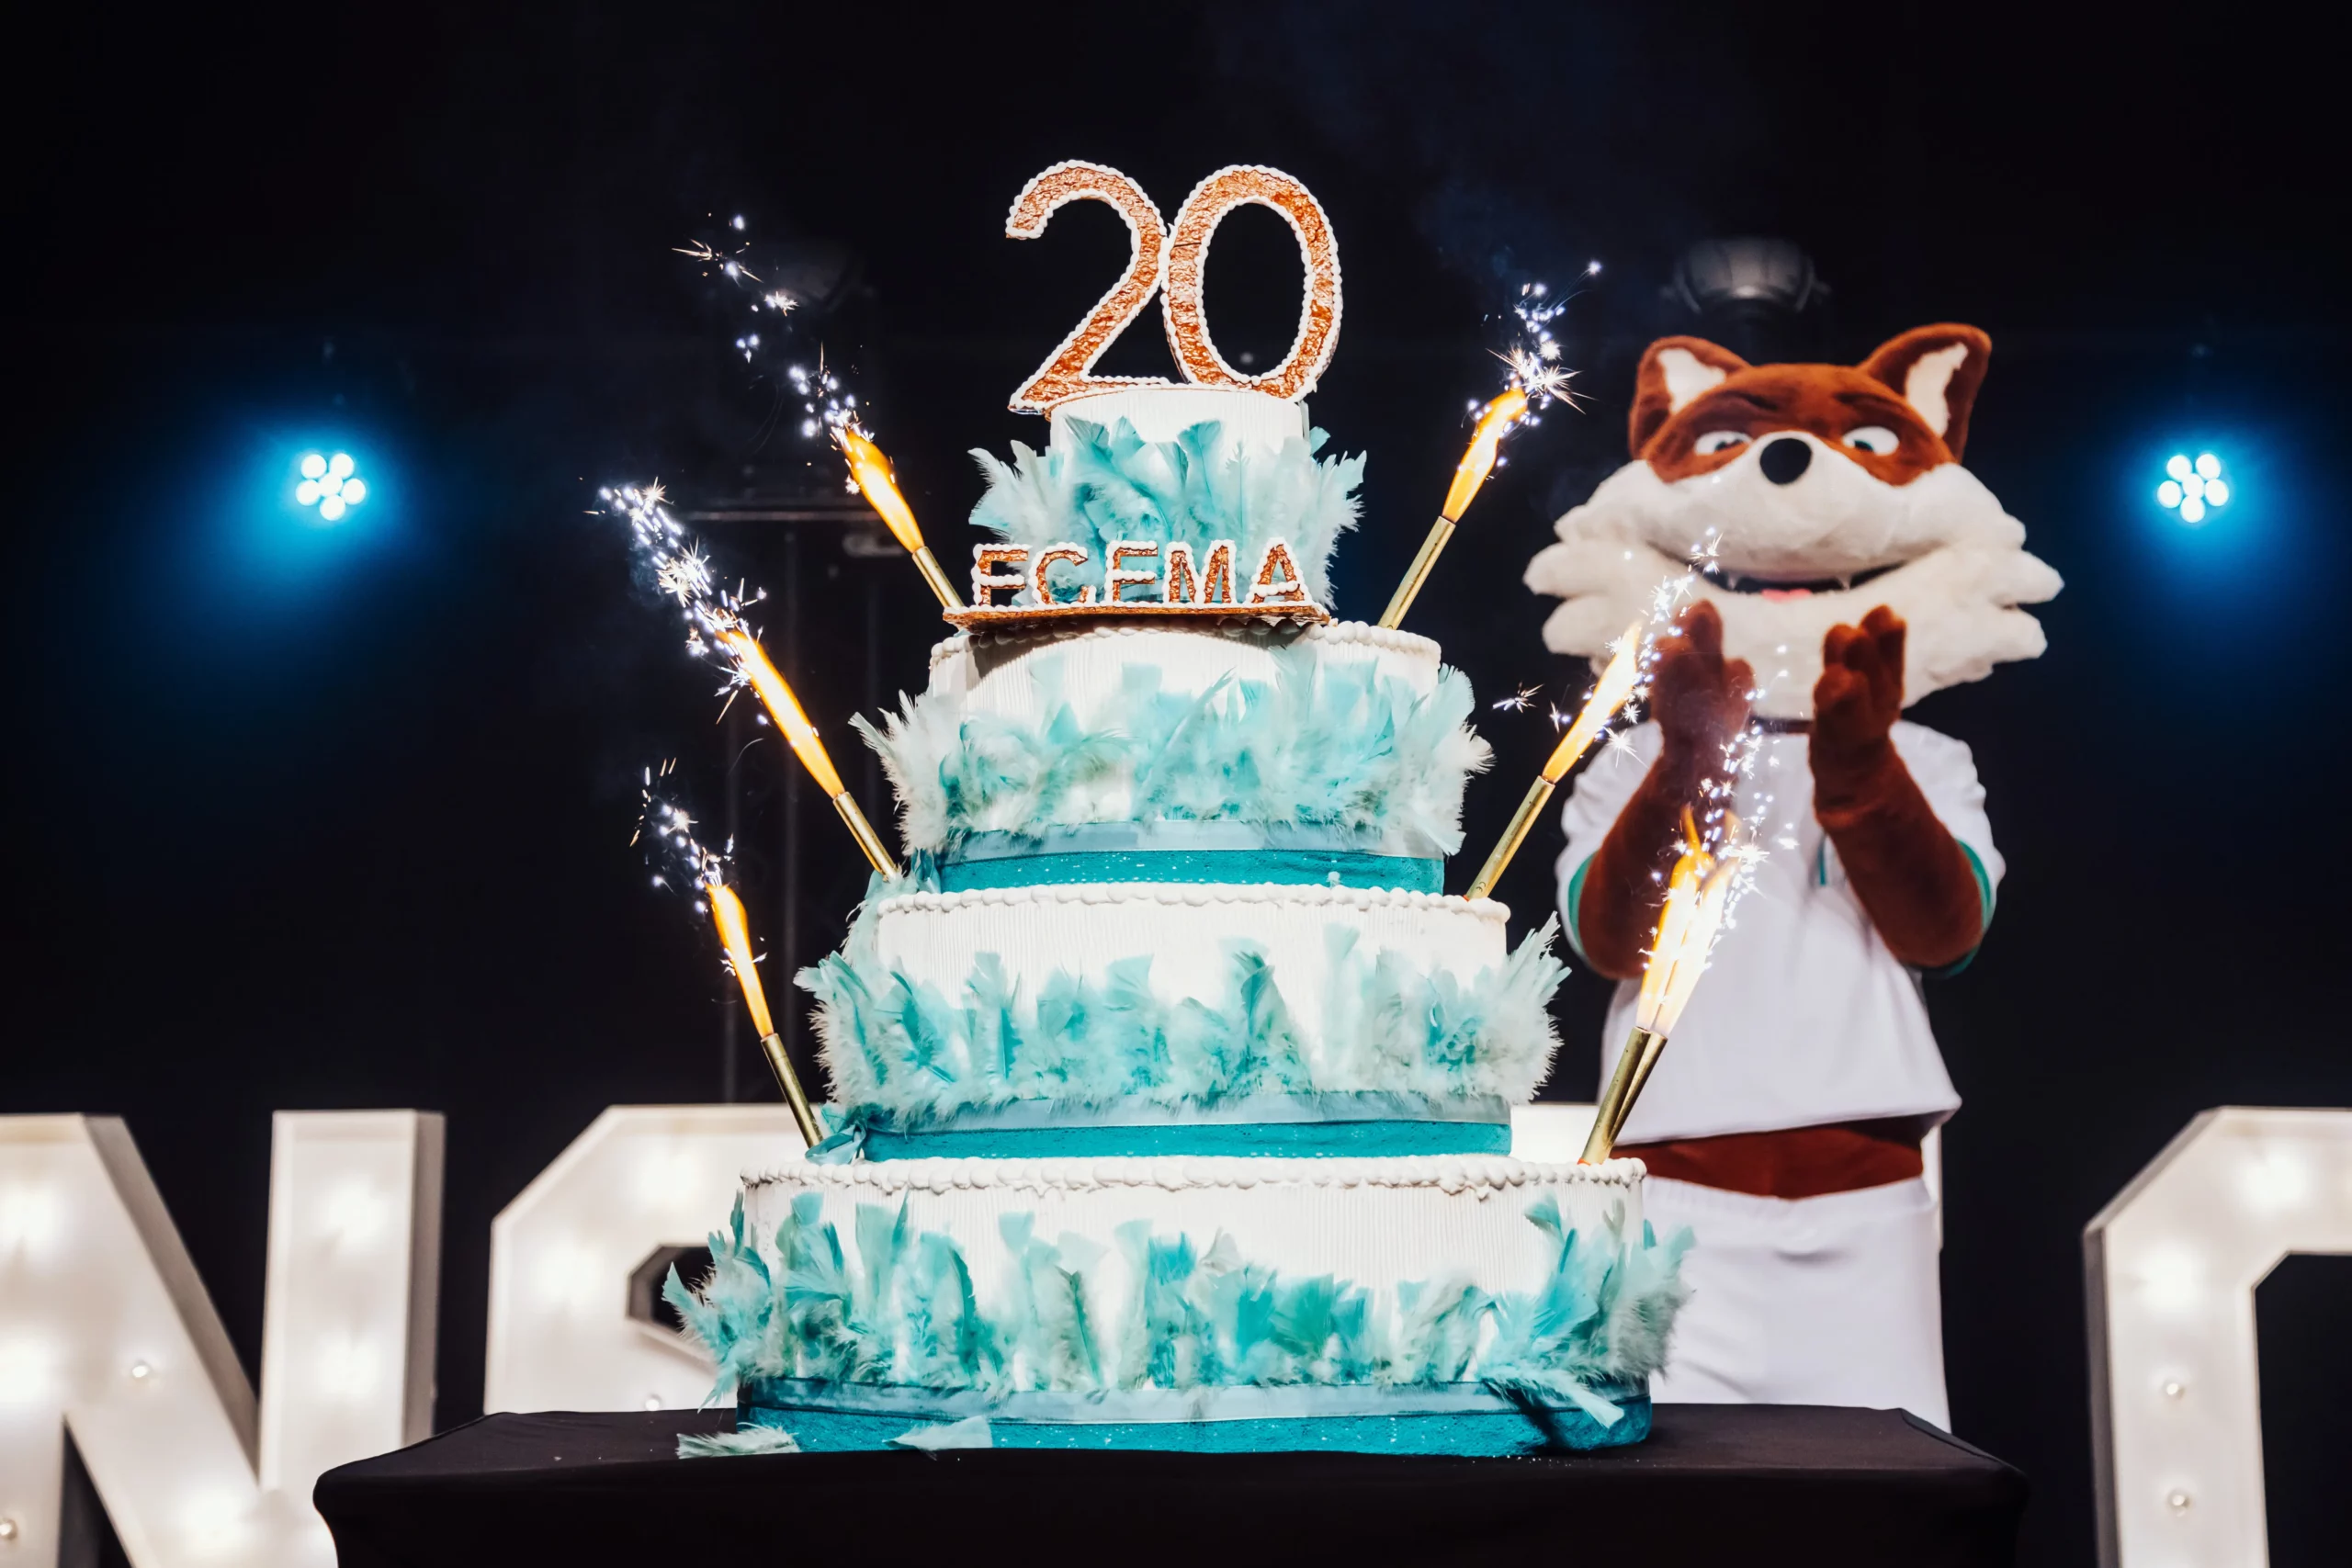 Gâteau des 20 ans et mascotte ECEMA